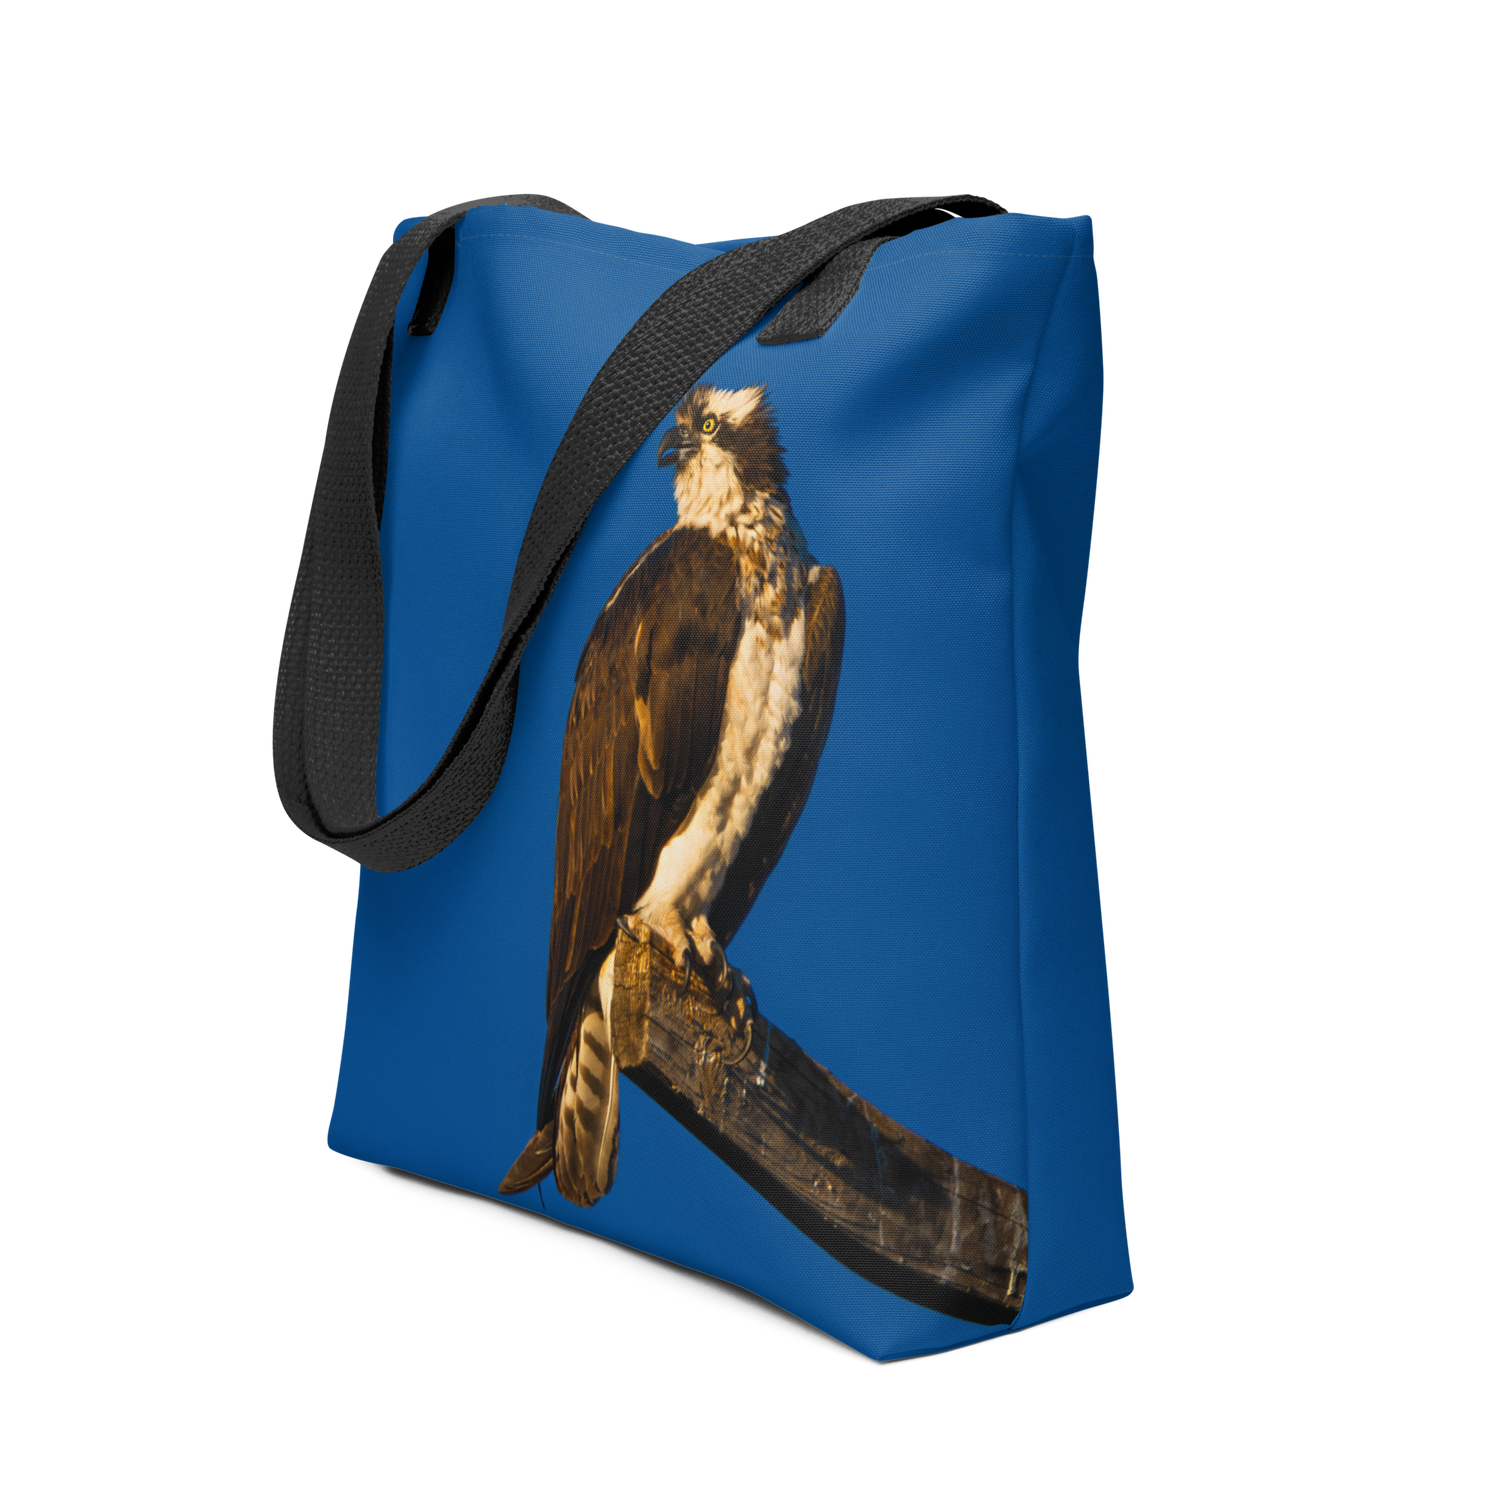 Osprey Tote bag